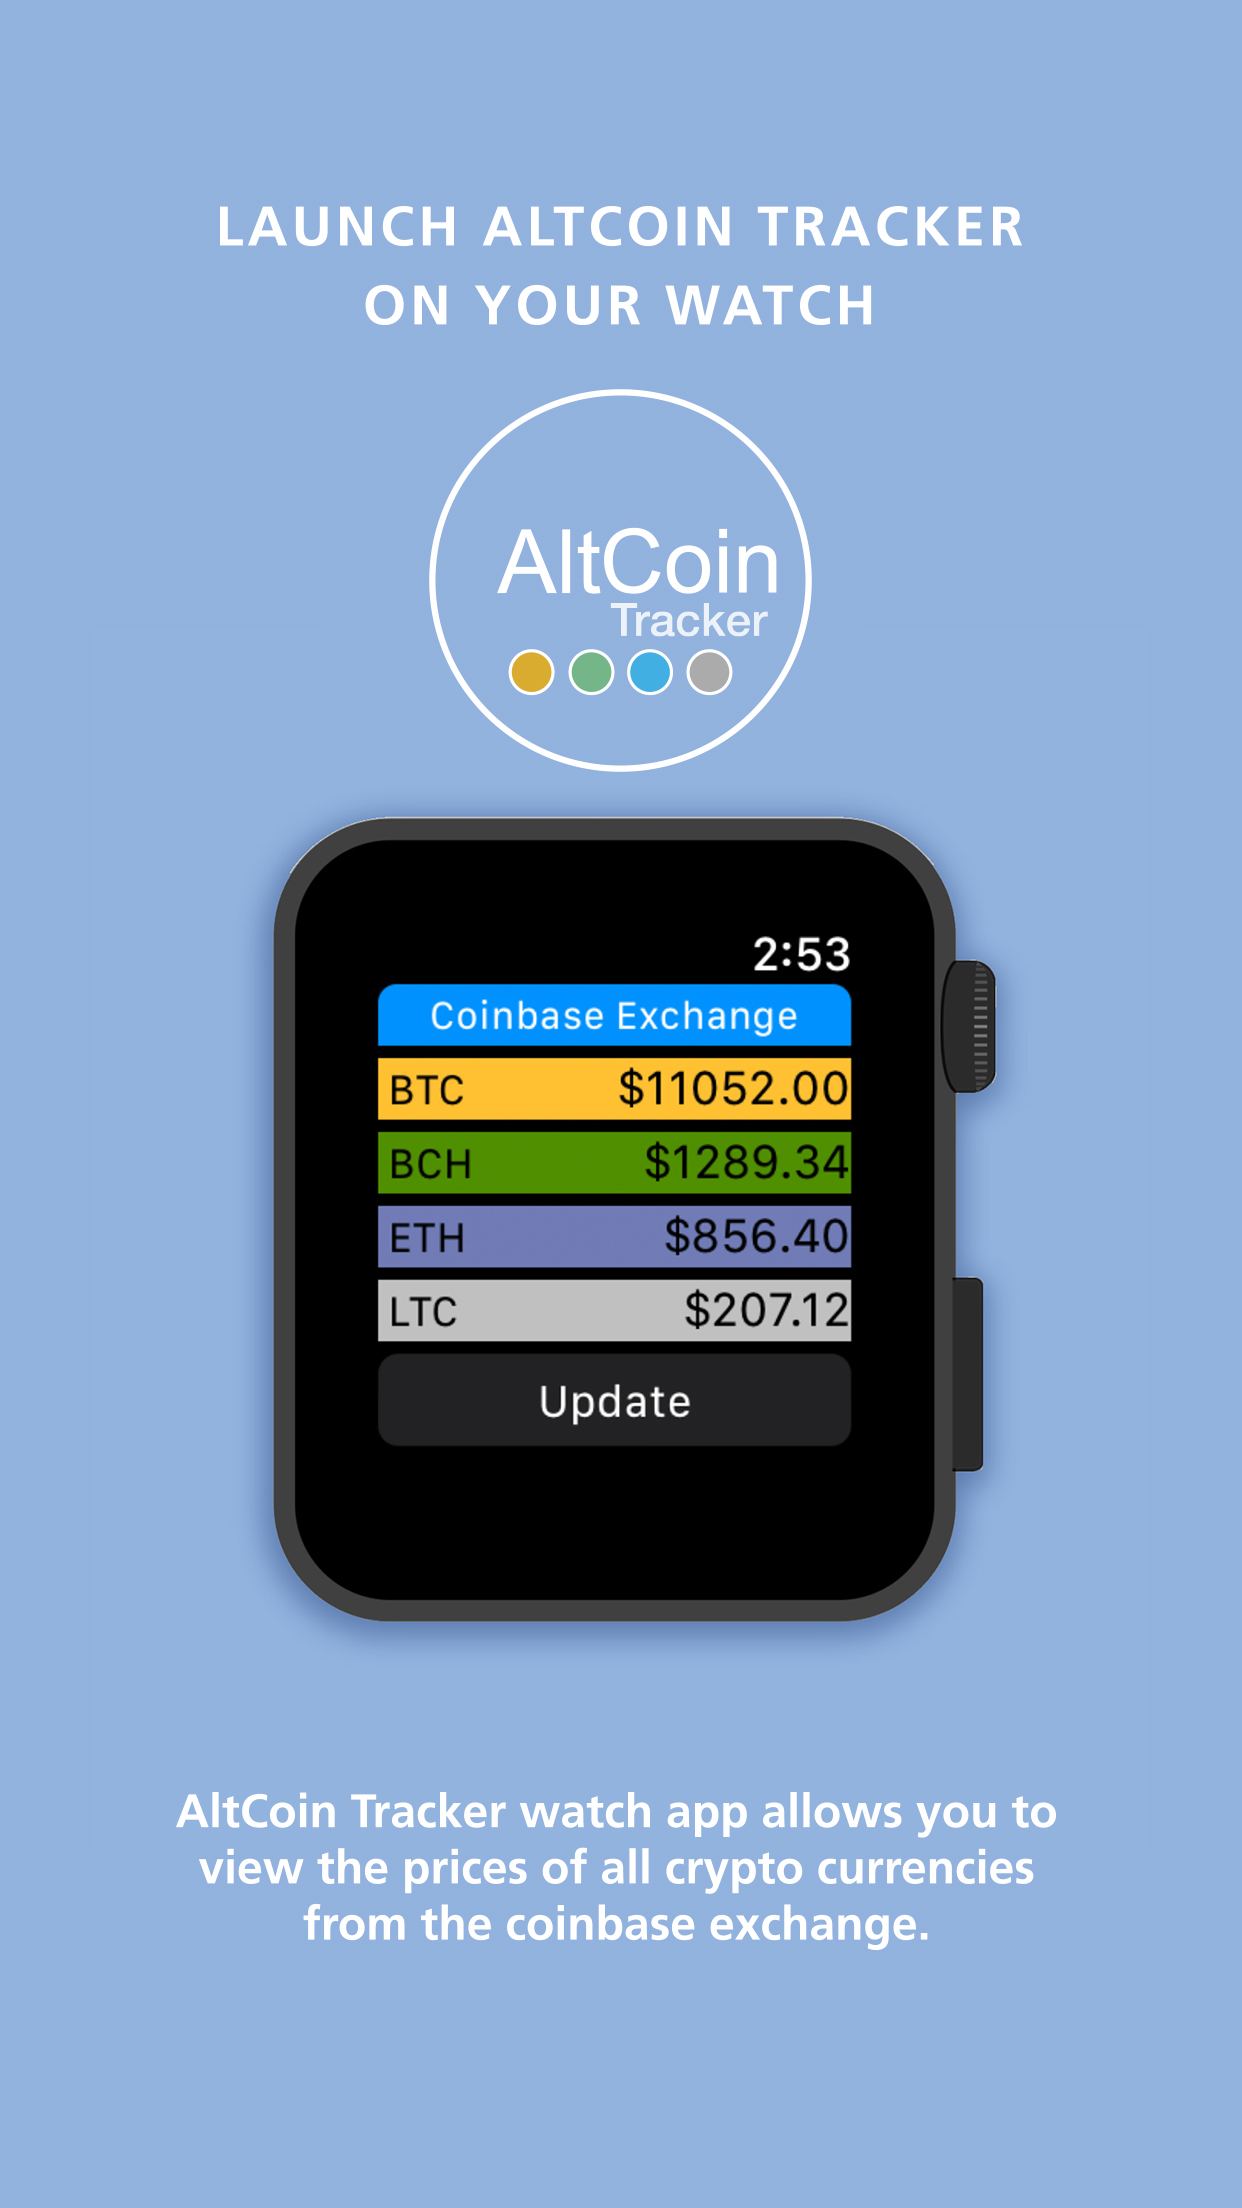 AltCoin Tracker Watch App – Edward Marjy